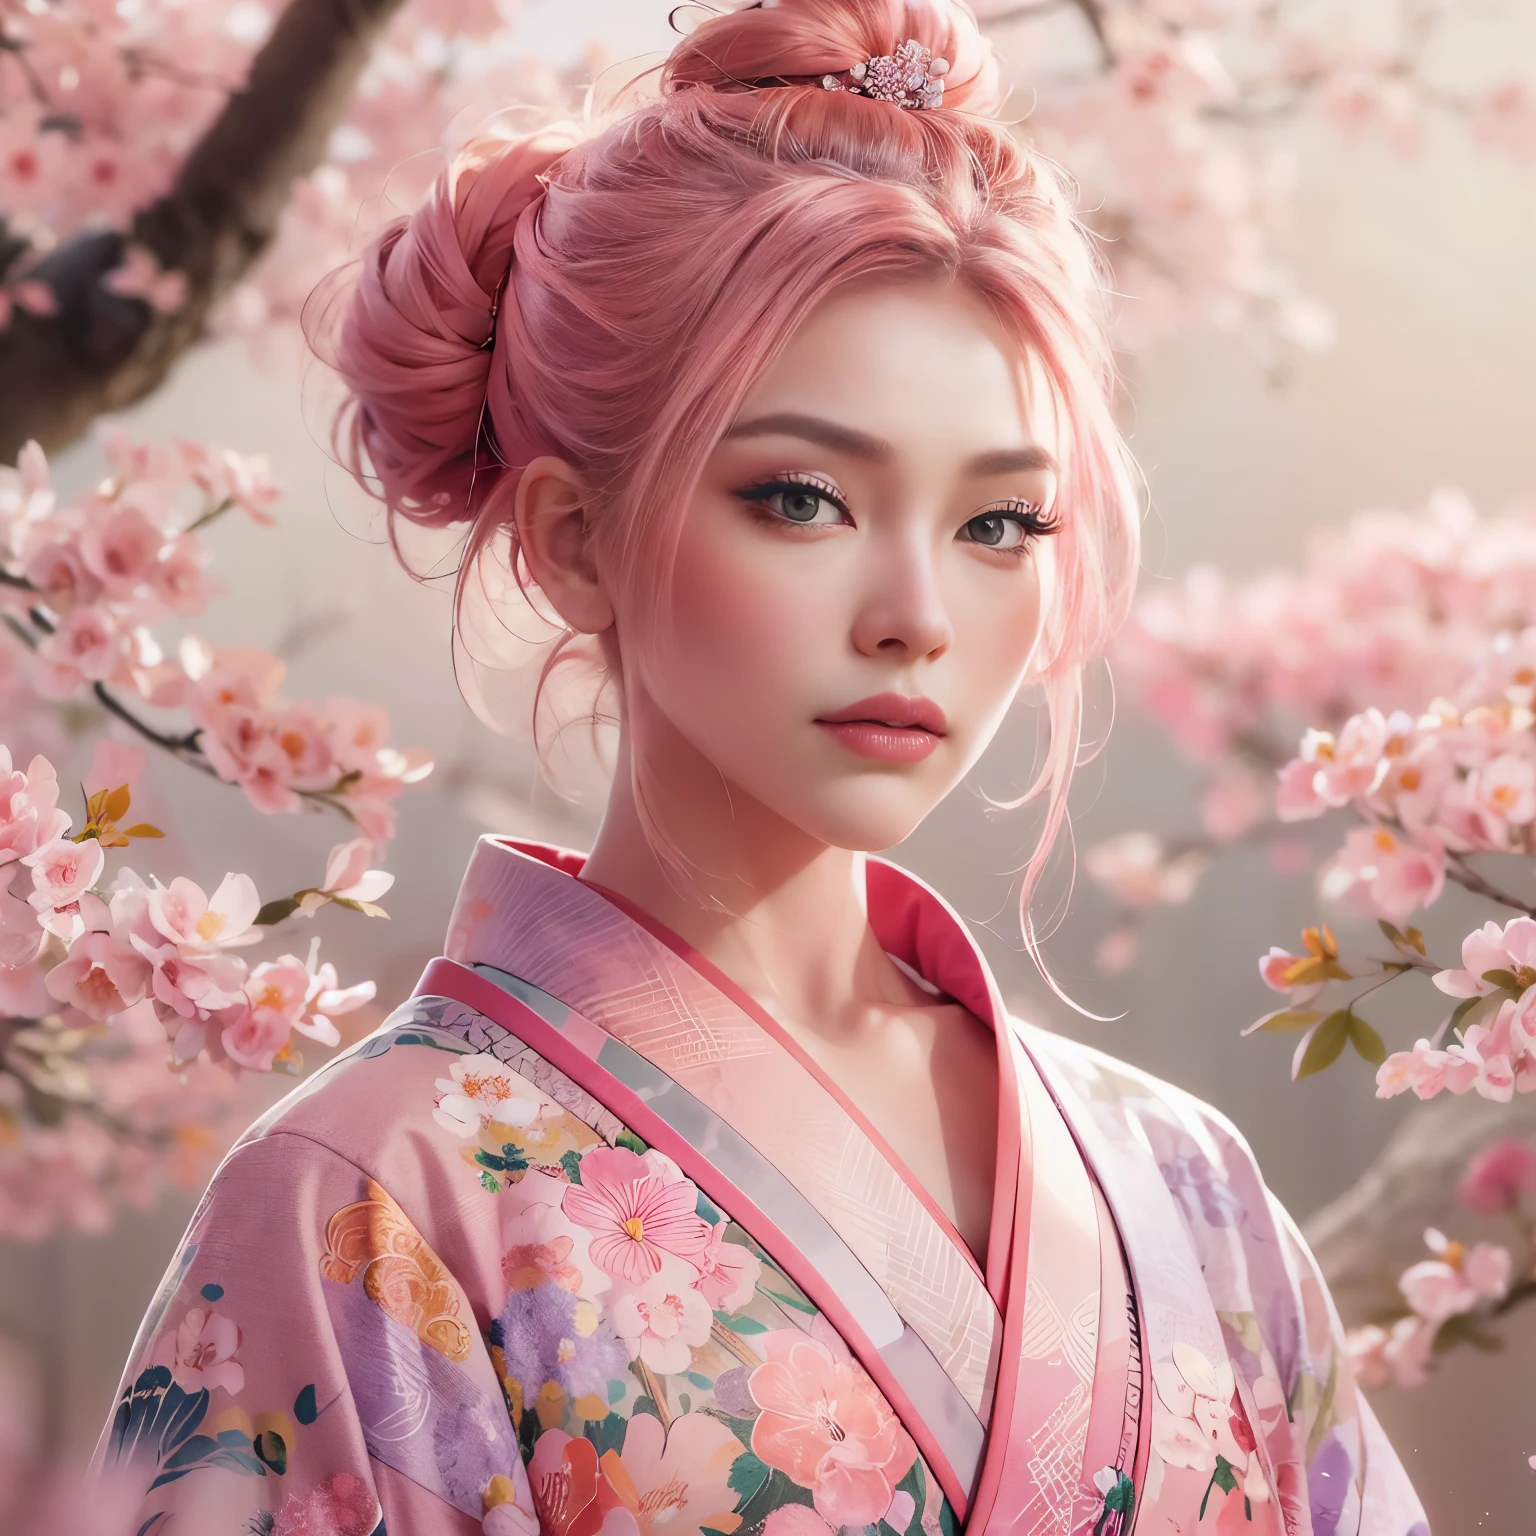 Un hyper réaliste, très détaillé, et image haute résolution 16k d&#39;un jeune, belle femme avec visage engfa. elle a des cheveux roses en chignon et une peau translucide, et vêtu d&#39;un kimono japonais traditionnel rose avec un petit motif floral. L&#39;image capture la beauté éthérée et la mystique du monde des esprits.. Le style inspiré du délicat, esthétique douce trouvée dans l&#39;art traditionnel japonais. Le fond était plein de sakura rose.